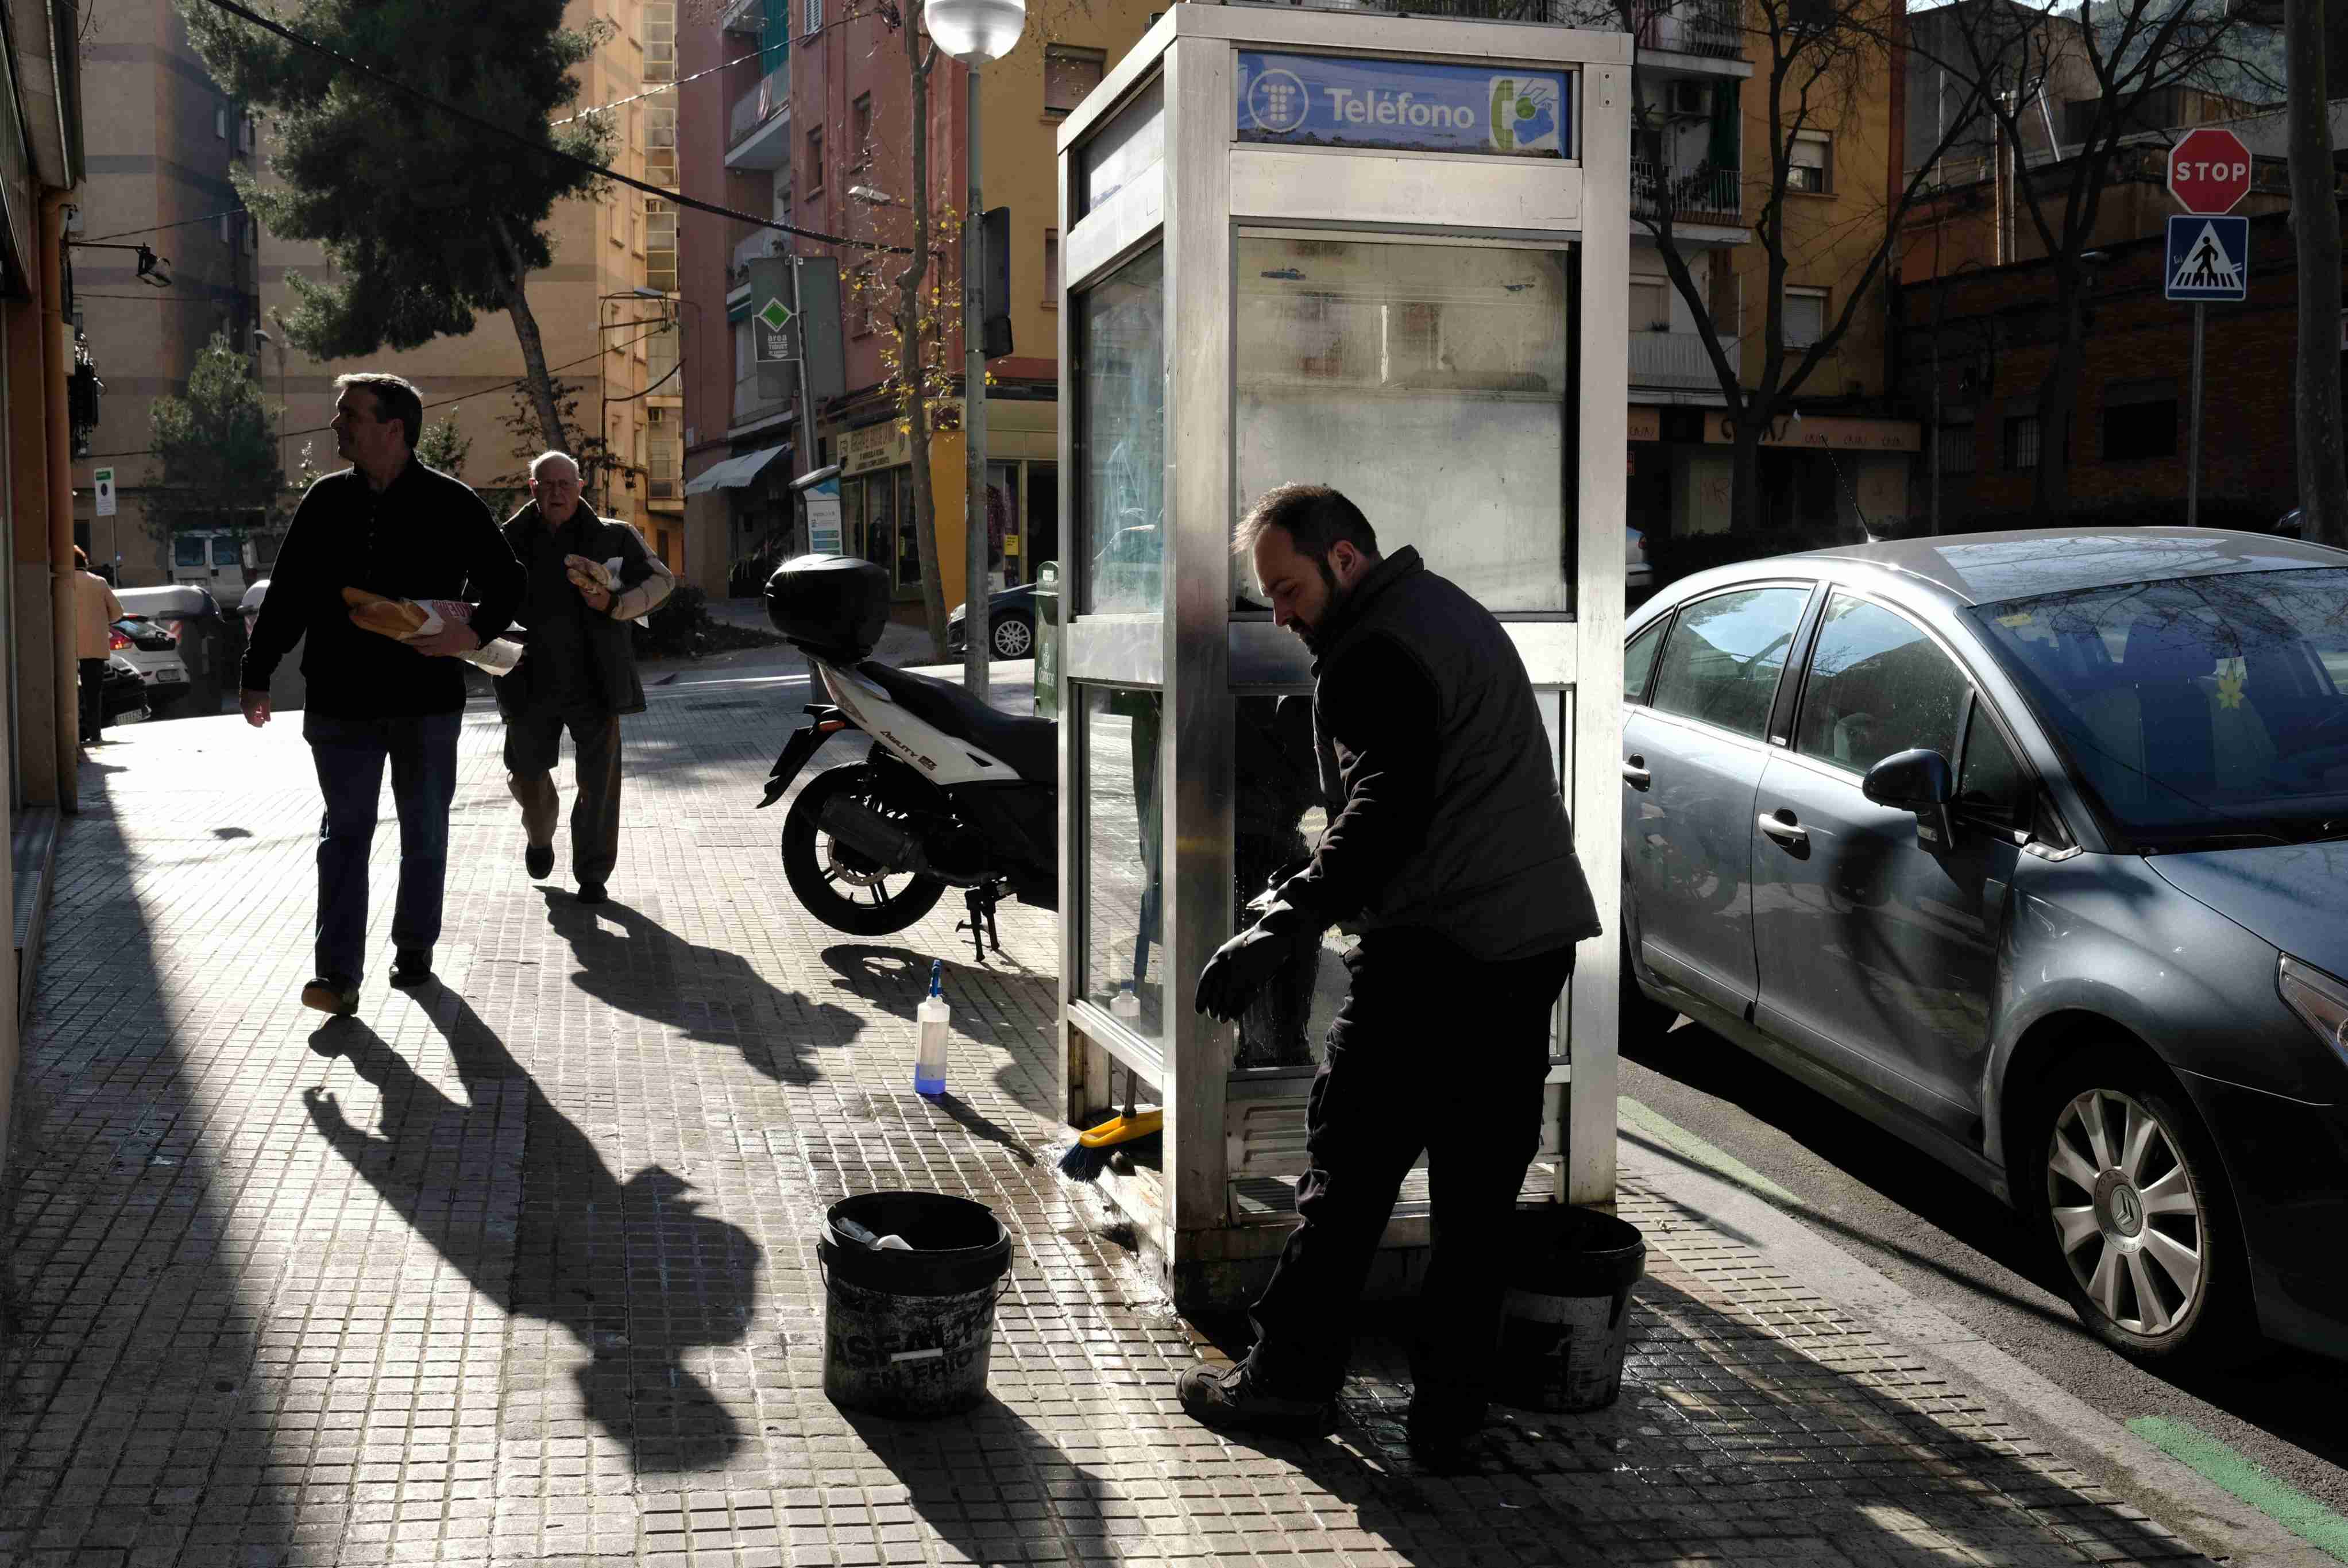 Aquesta és l’última cabina telefònica de Barcelona